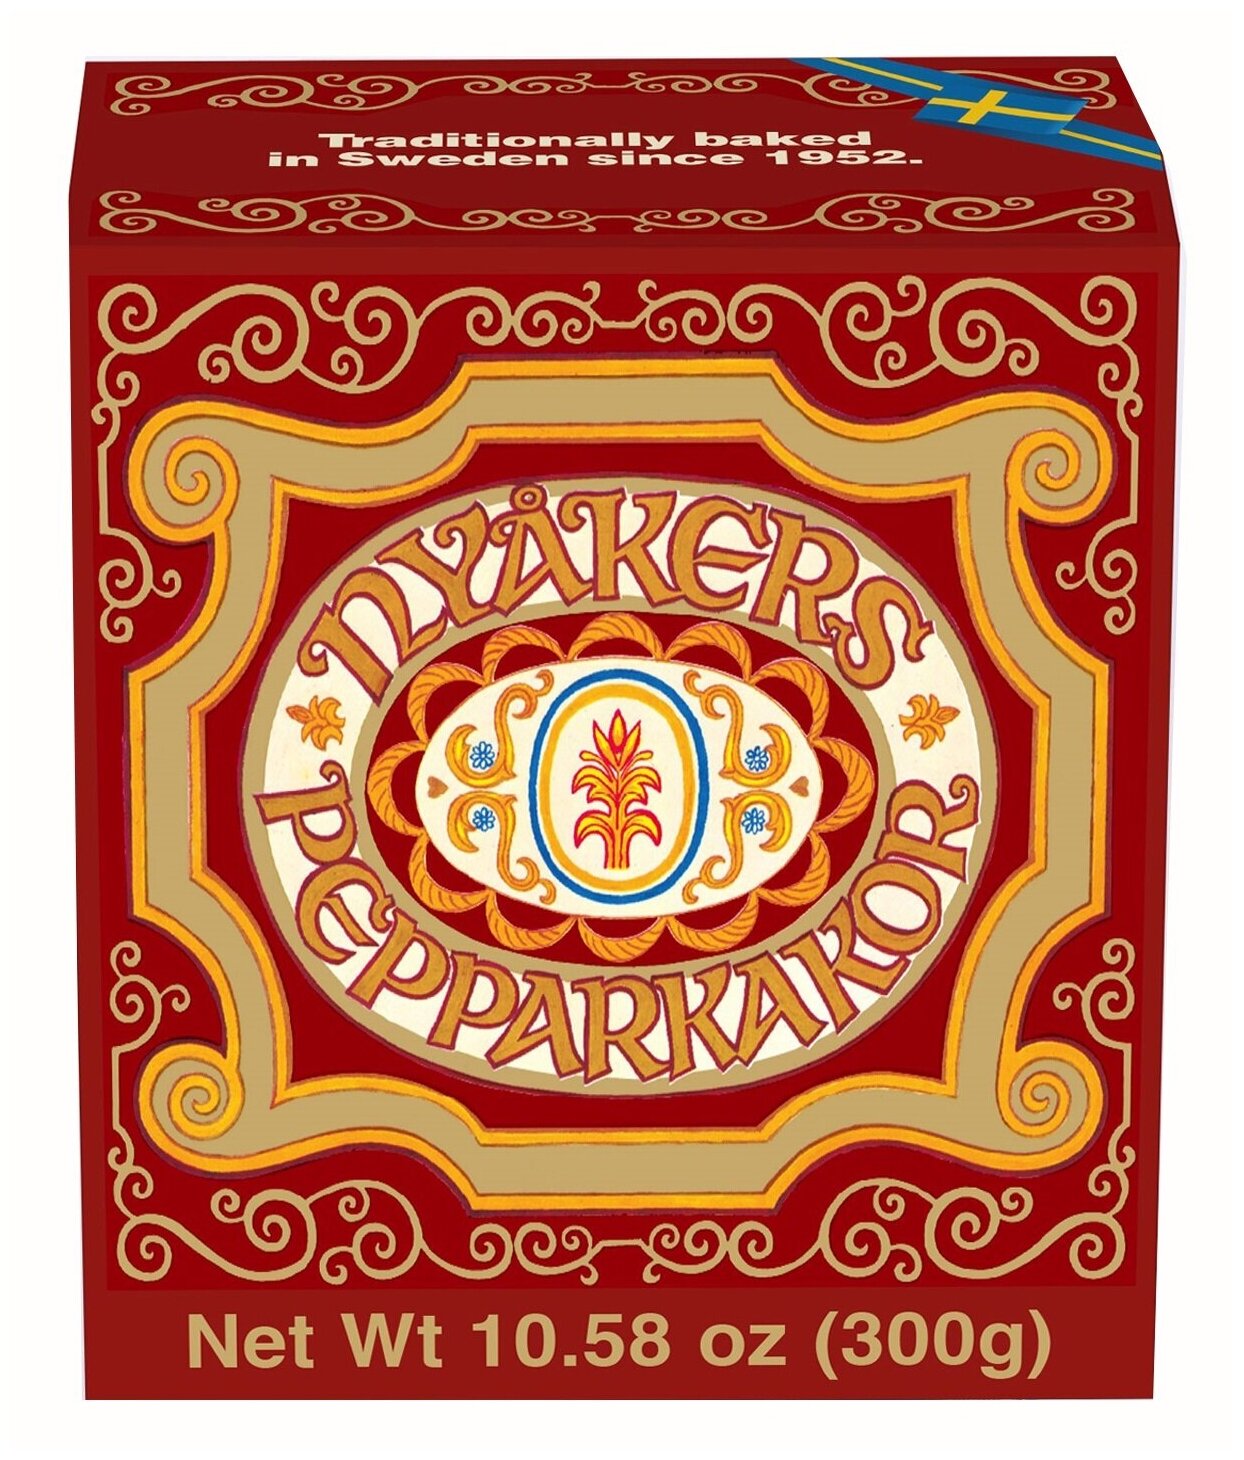 Имбирное печенье Nyakers "Original" в подарочной упаковке, 300г